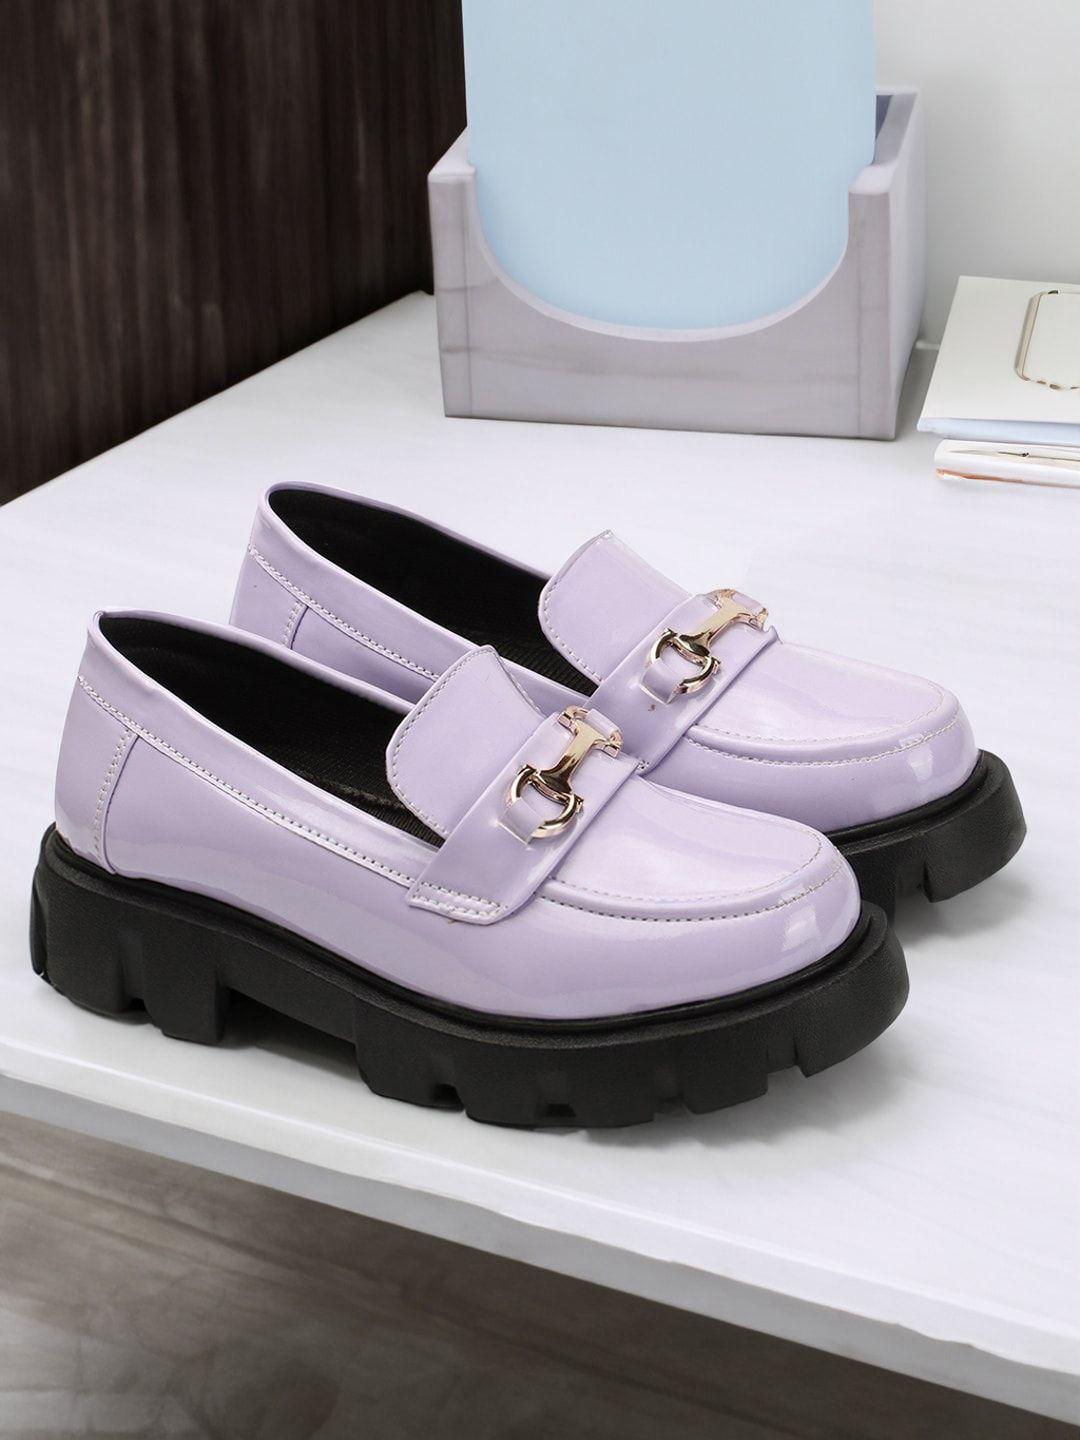 ophelia women purple loafers